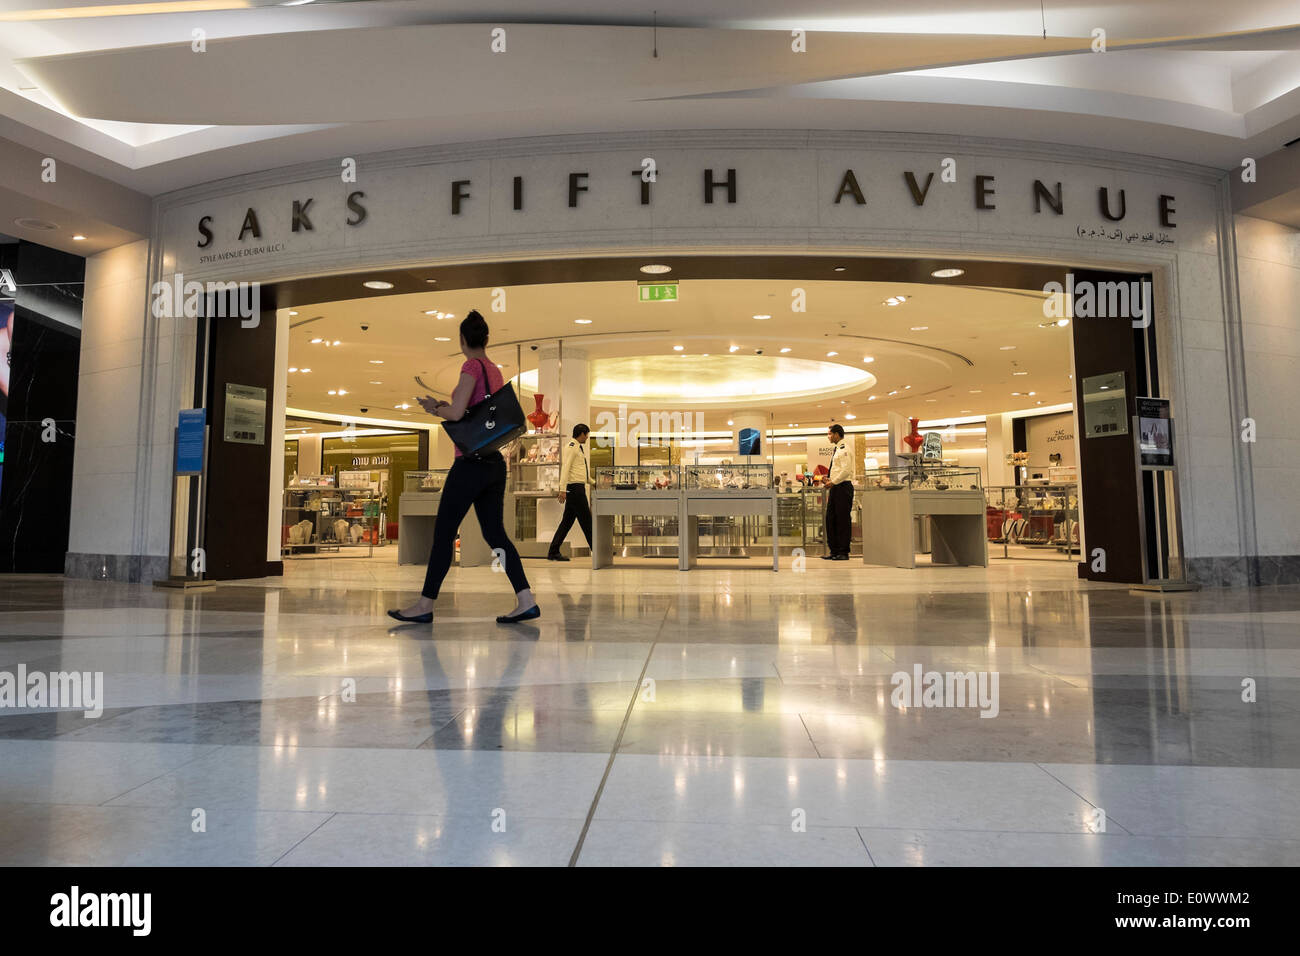 Saks Fifth Avenue speichern im Burjuman Shopping Mall in Dubai Vereinigte Arabische Emirate Stockfoto